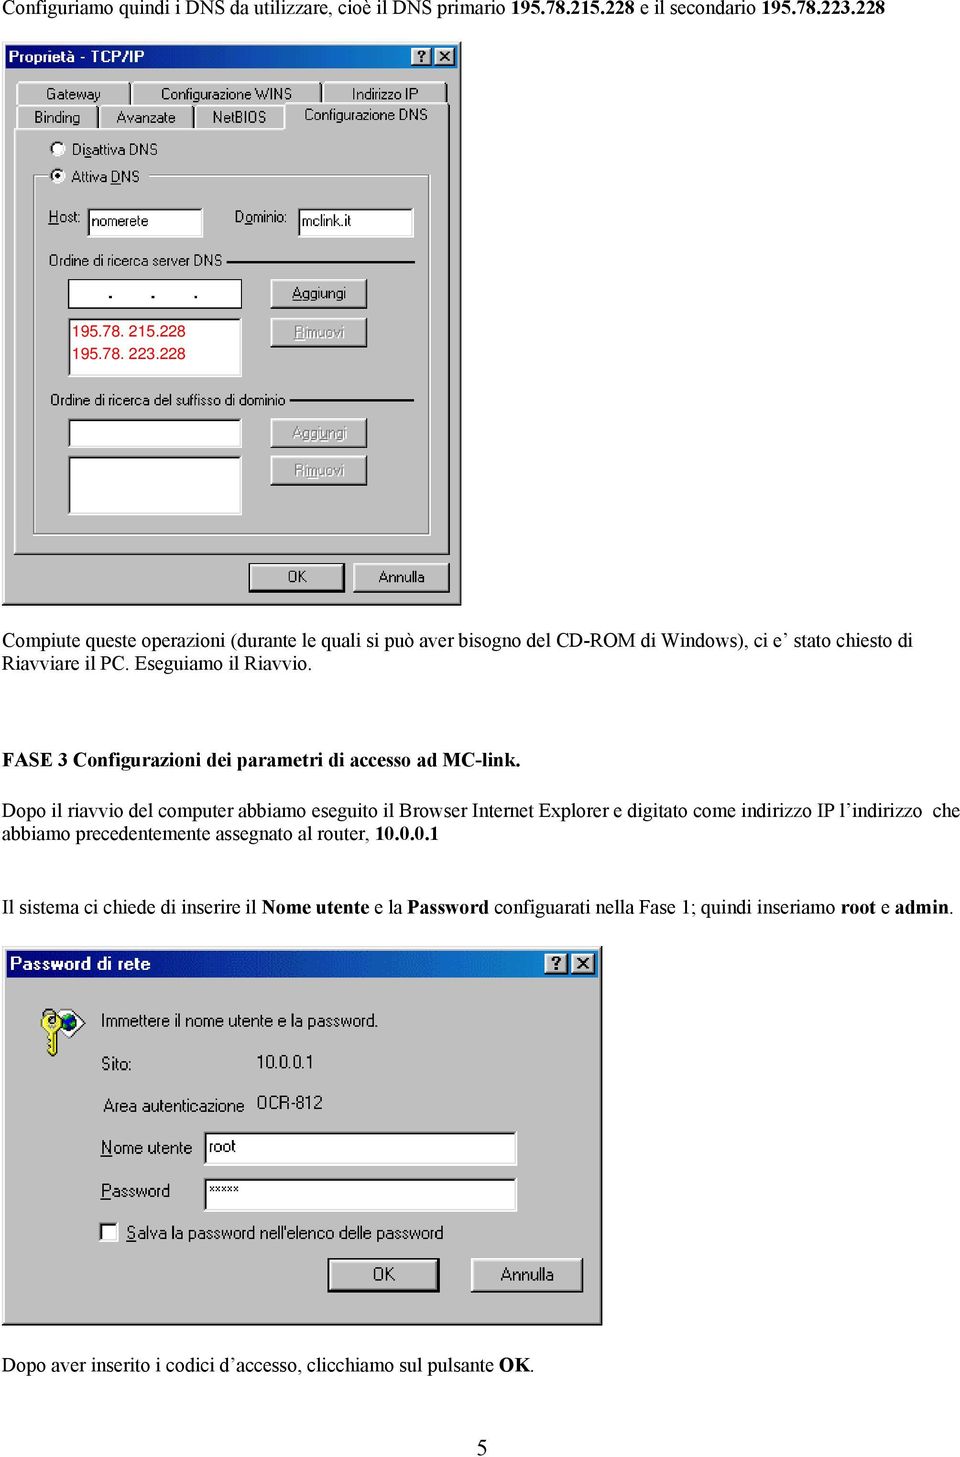 FASE 3 Configurazioni dei parametri di accesso ad MC-link.